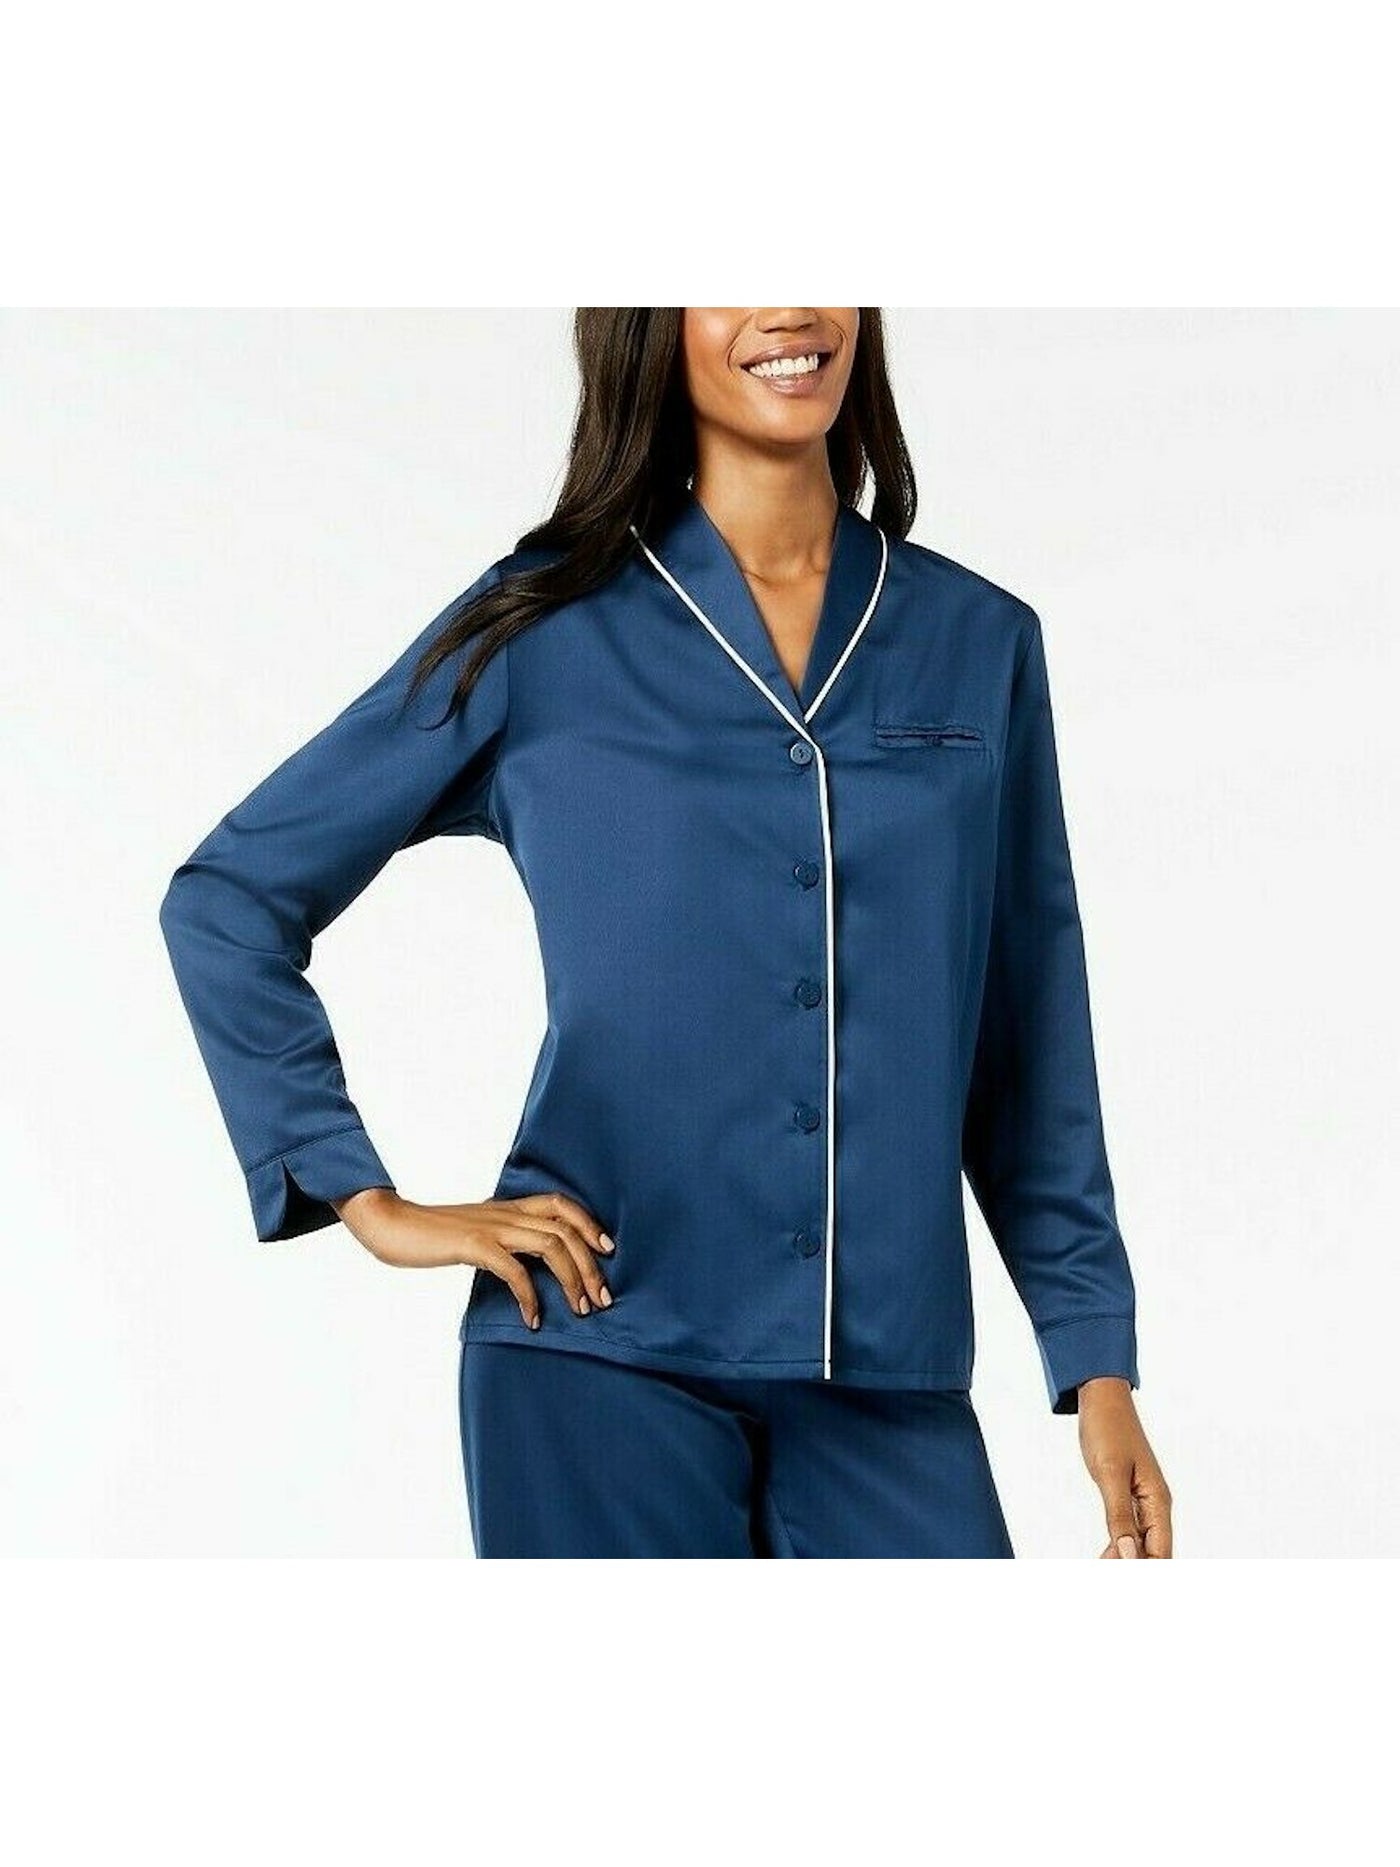 ALFANI INTIMATES Intimates Blue V-Neck Long Sleeve Sleep Shirt Pajama Top XXL